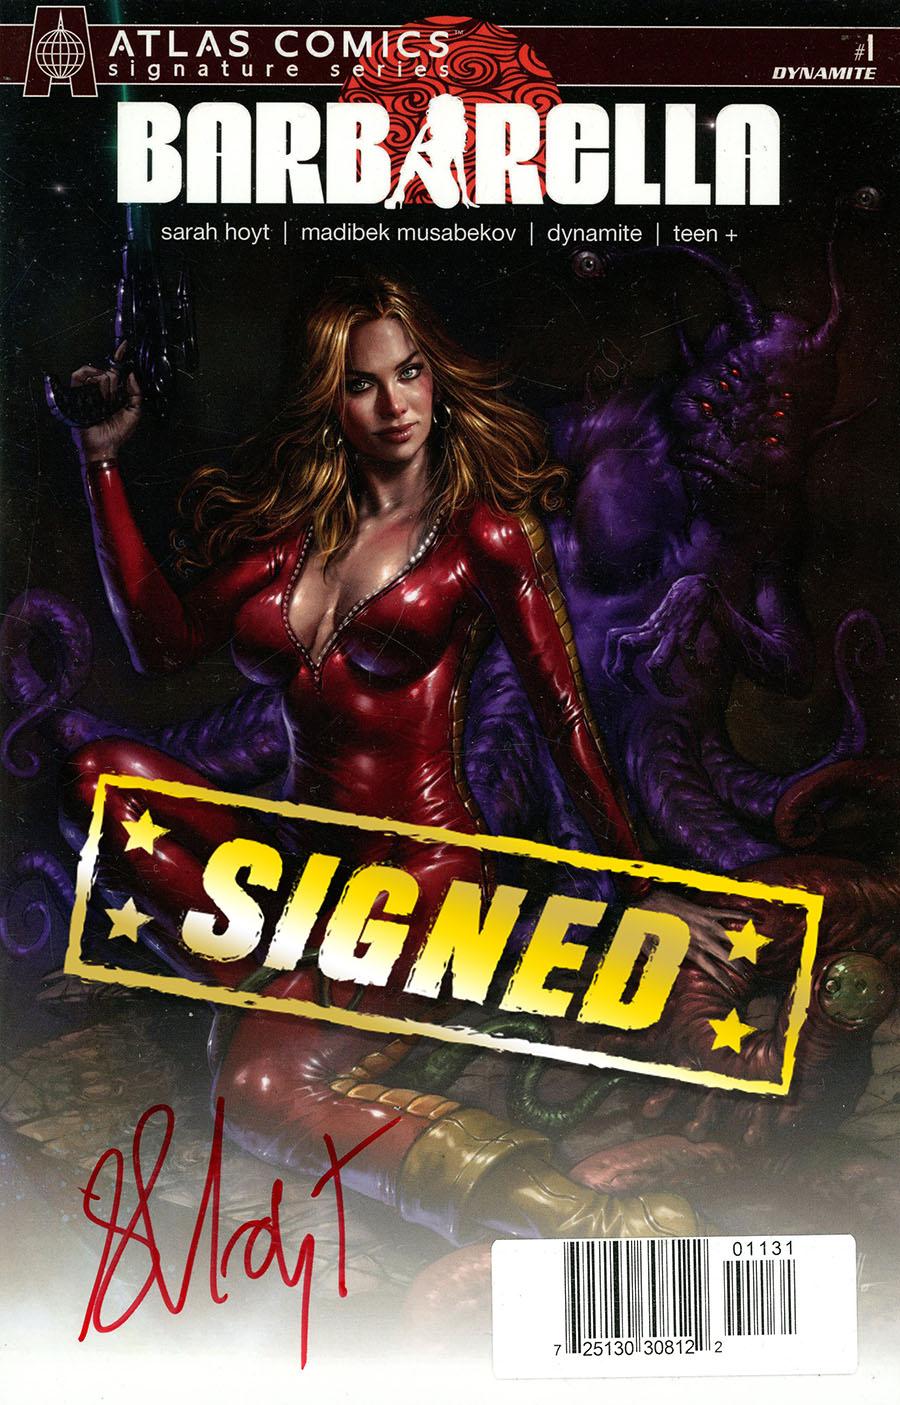 Barbarella Vol 2 #1 Cover Q Atlas Comics Signature Series Signed By Sarah Hoyt